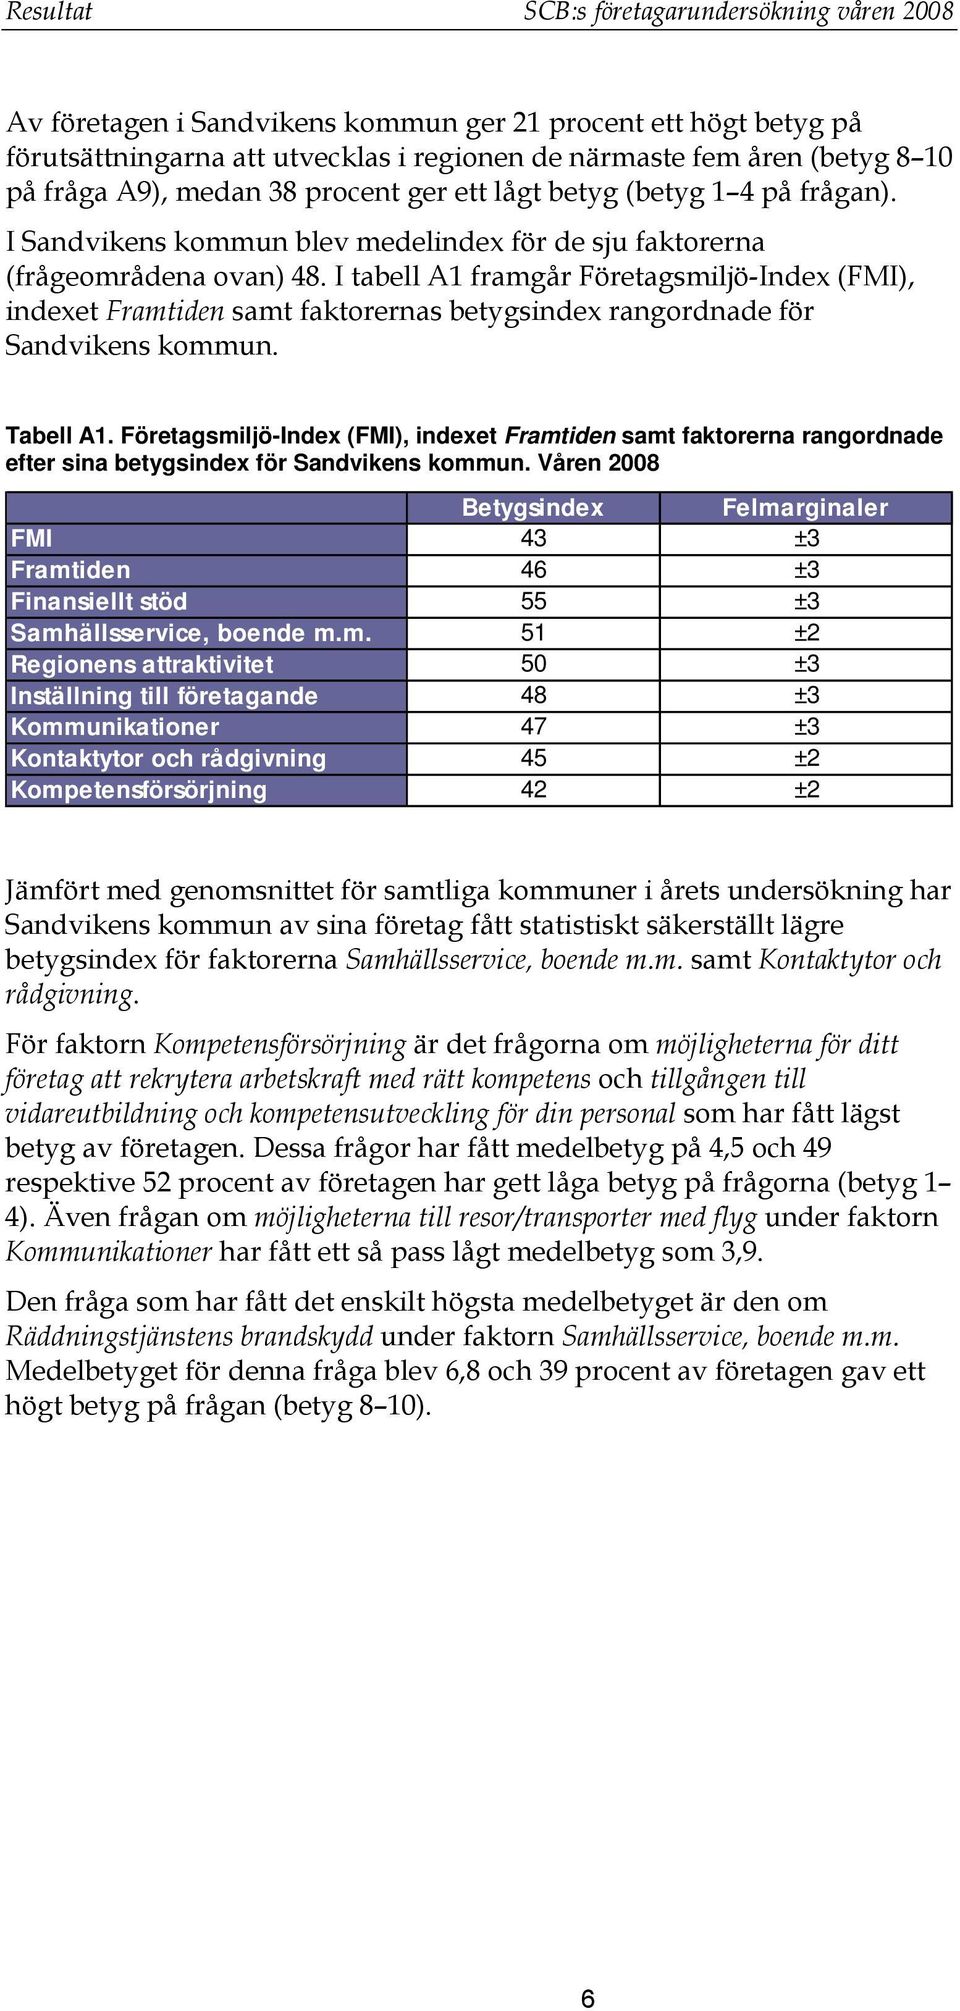 I tabell A1 framgår Företagsmiljö-Index (FMI), indexet Framtiden samt faktorernas betygsindex rangordnade för Sandvikens kommun. Tabell A1.